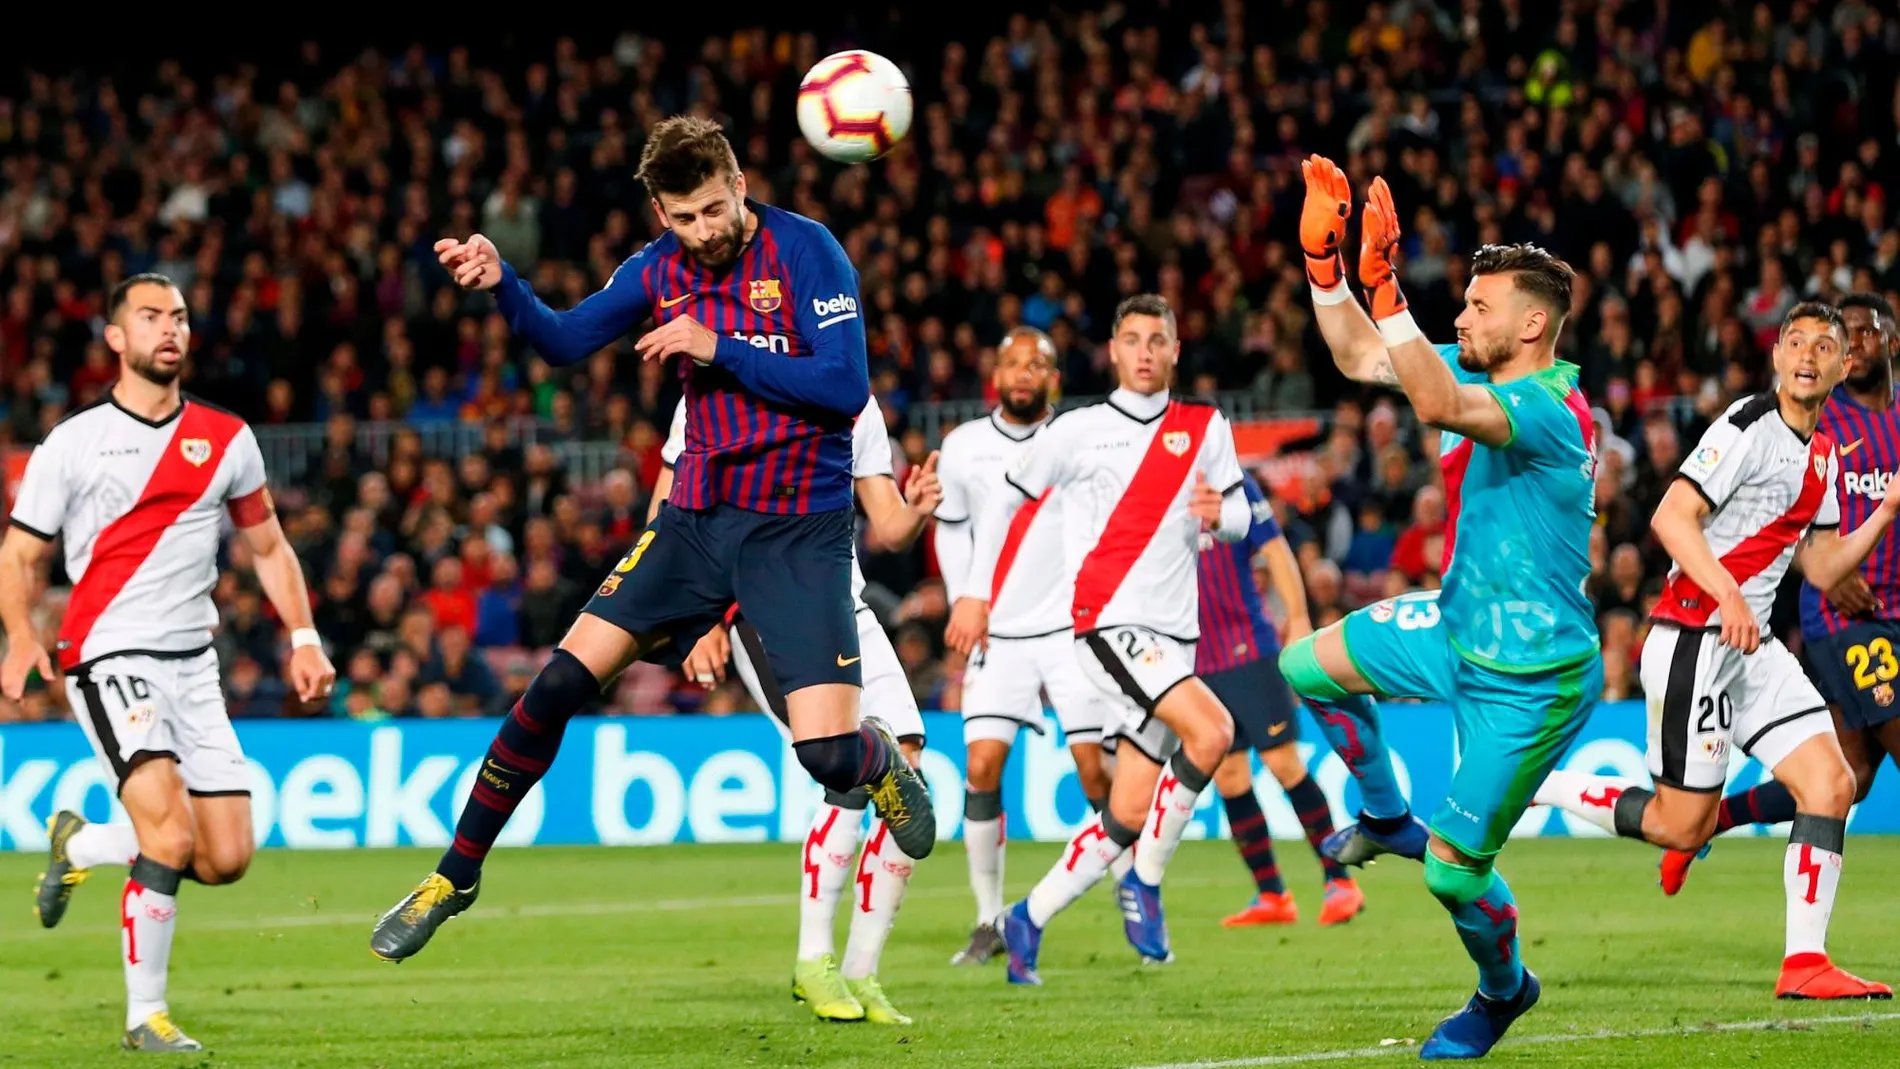 El defensa del FC Barcelona Gerard Piqué anota un gol ante el Rayo Vallecano / Foto: Efe